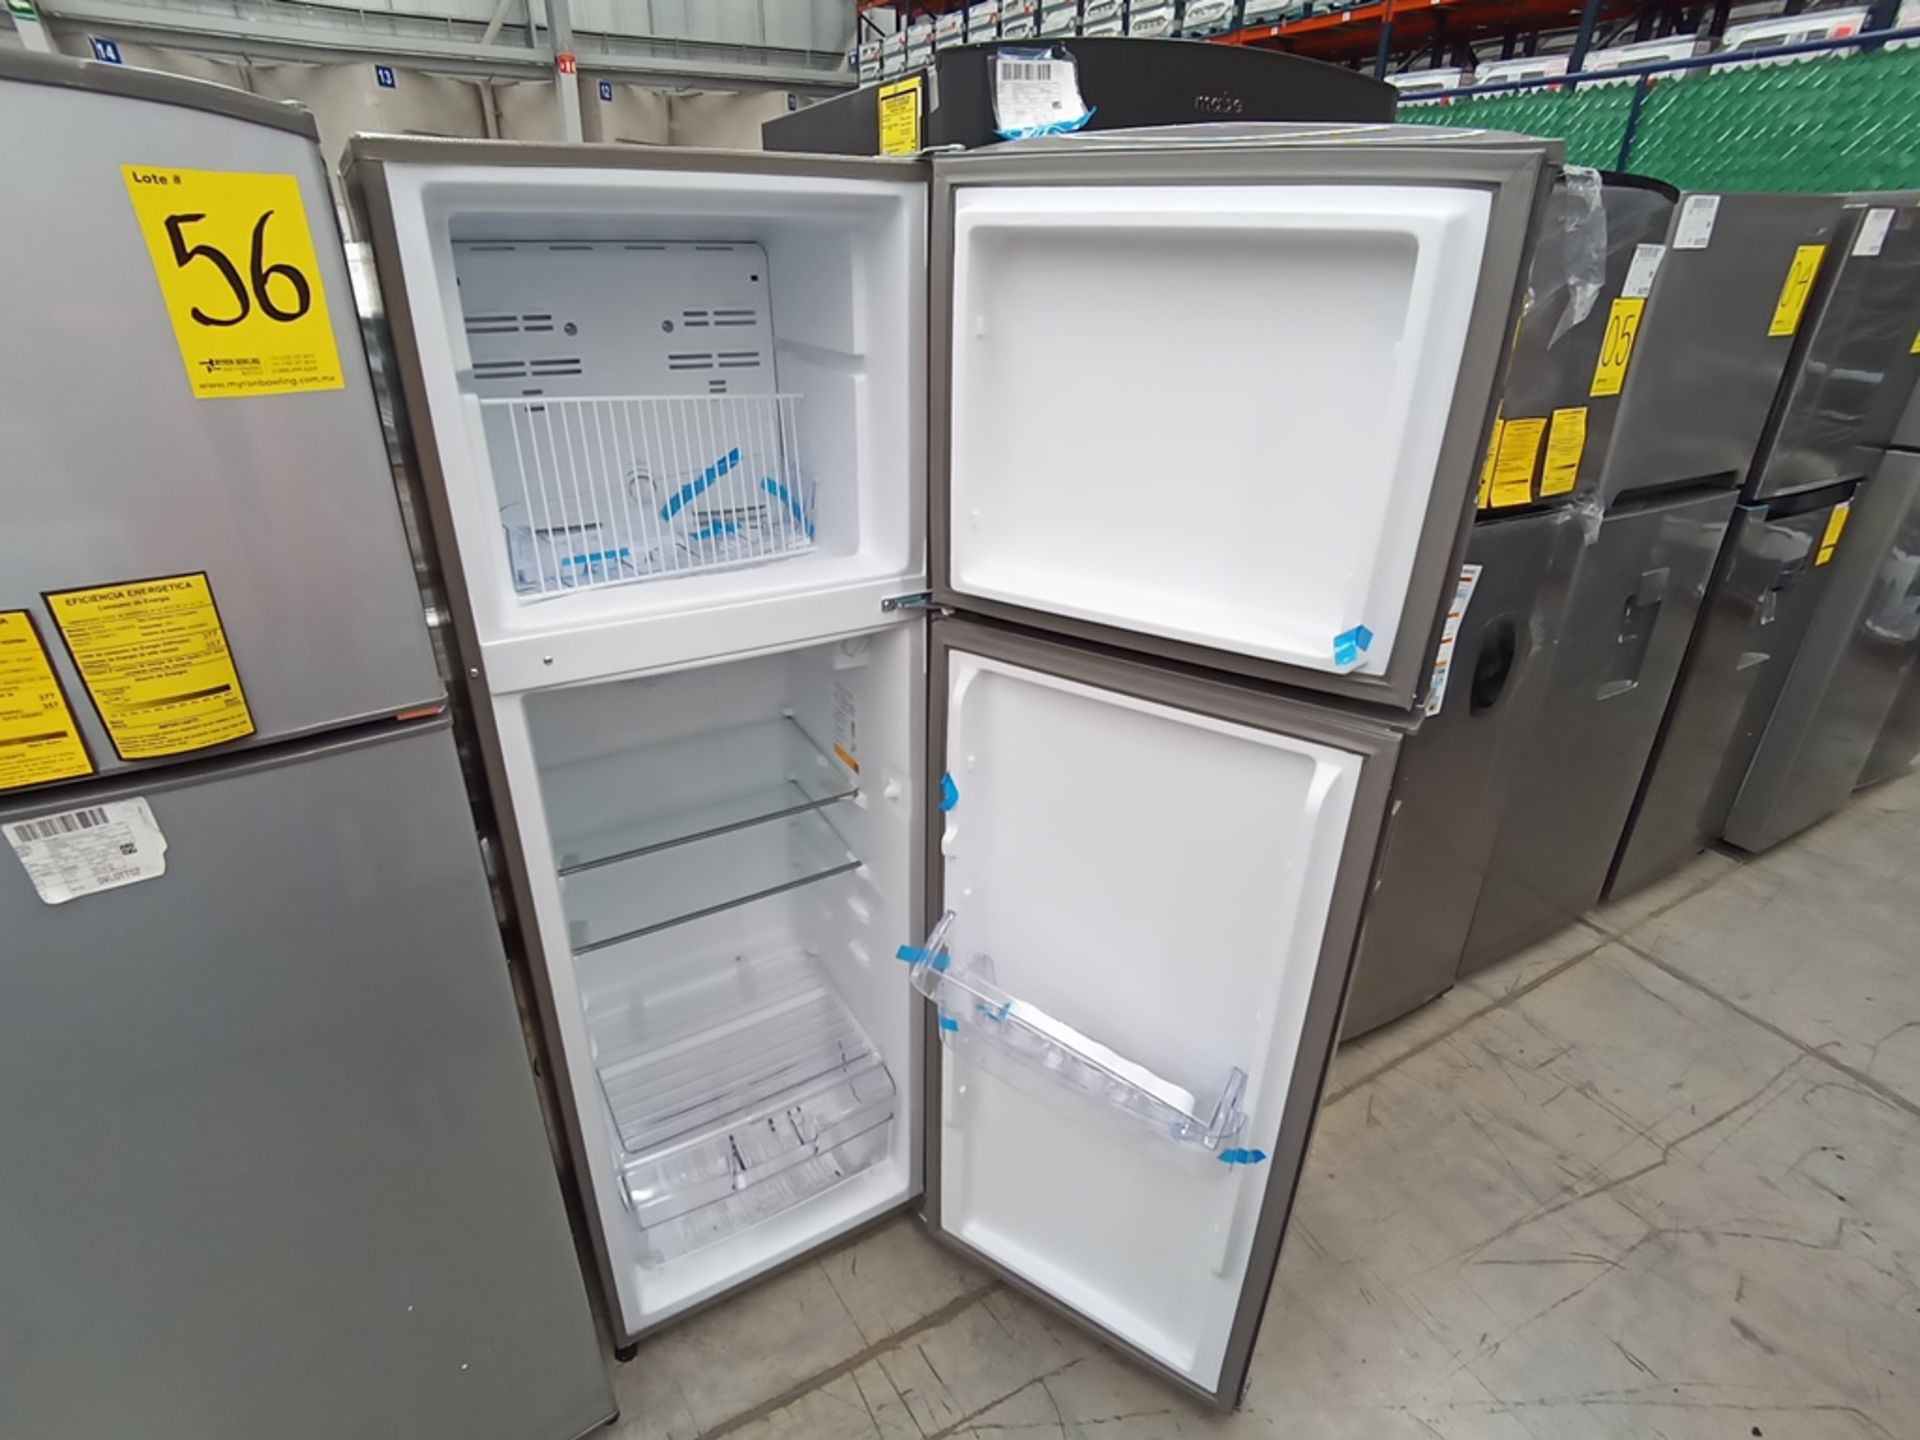 1 Refrigerador Marca Acros, Modelo AT091FG, Serie VRA3383587, Color Gris con Estampado. Golpeado. F - Image 8 of 30